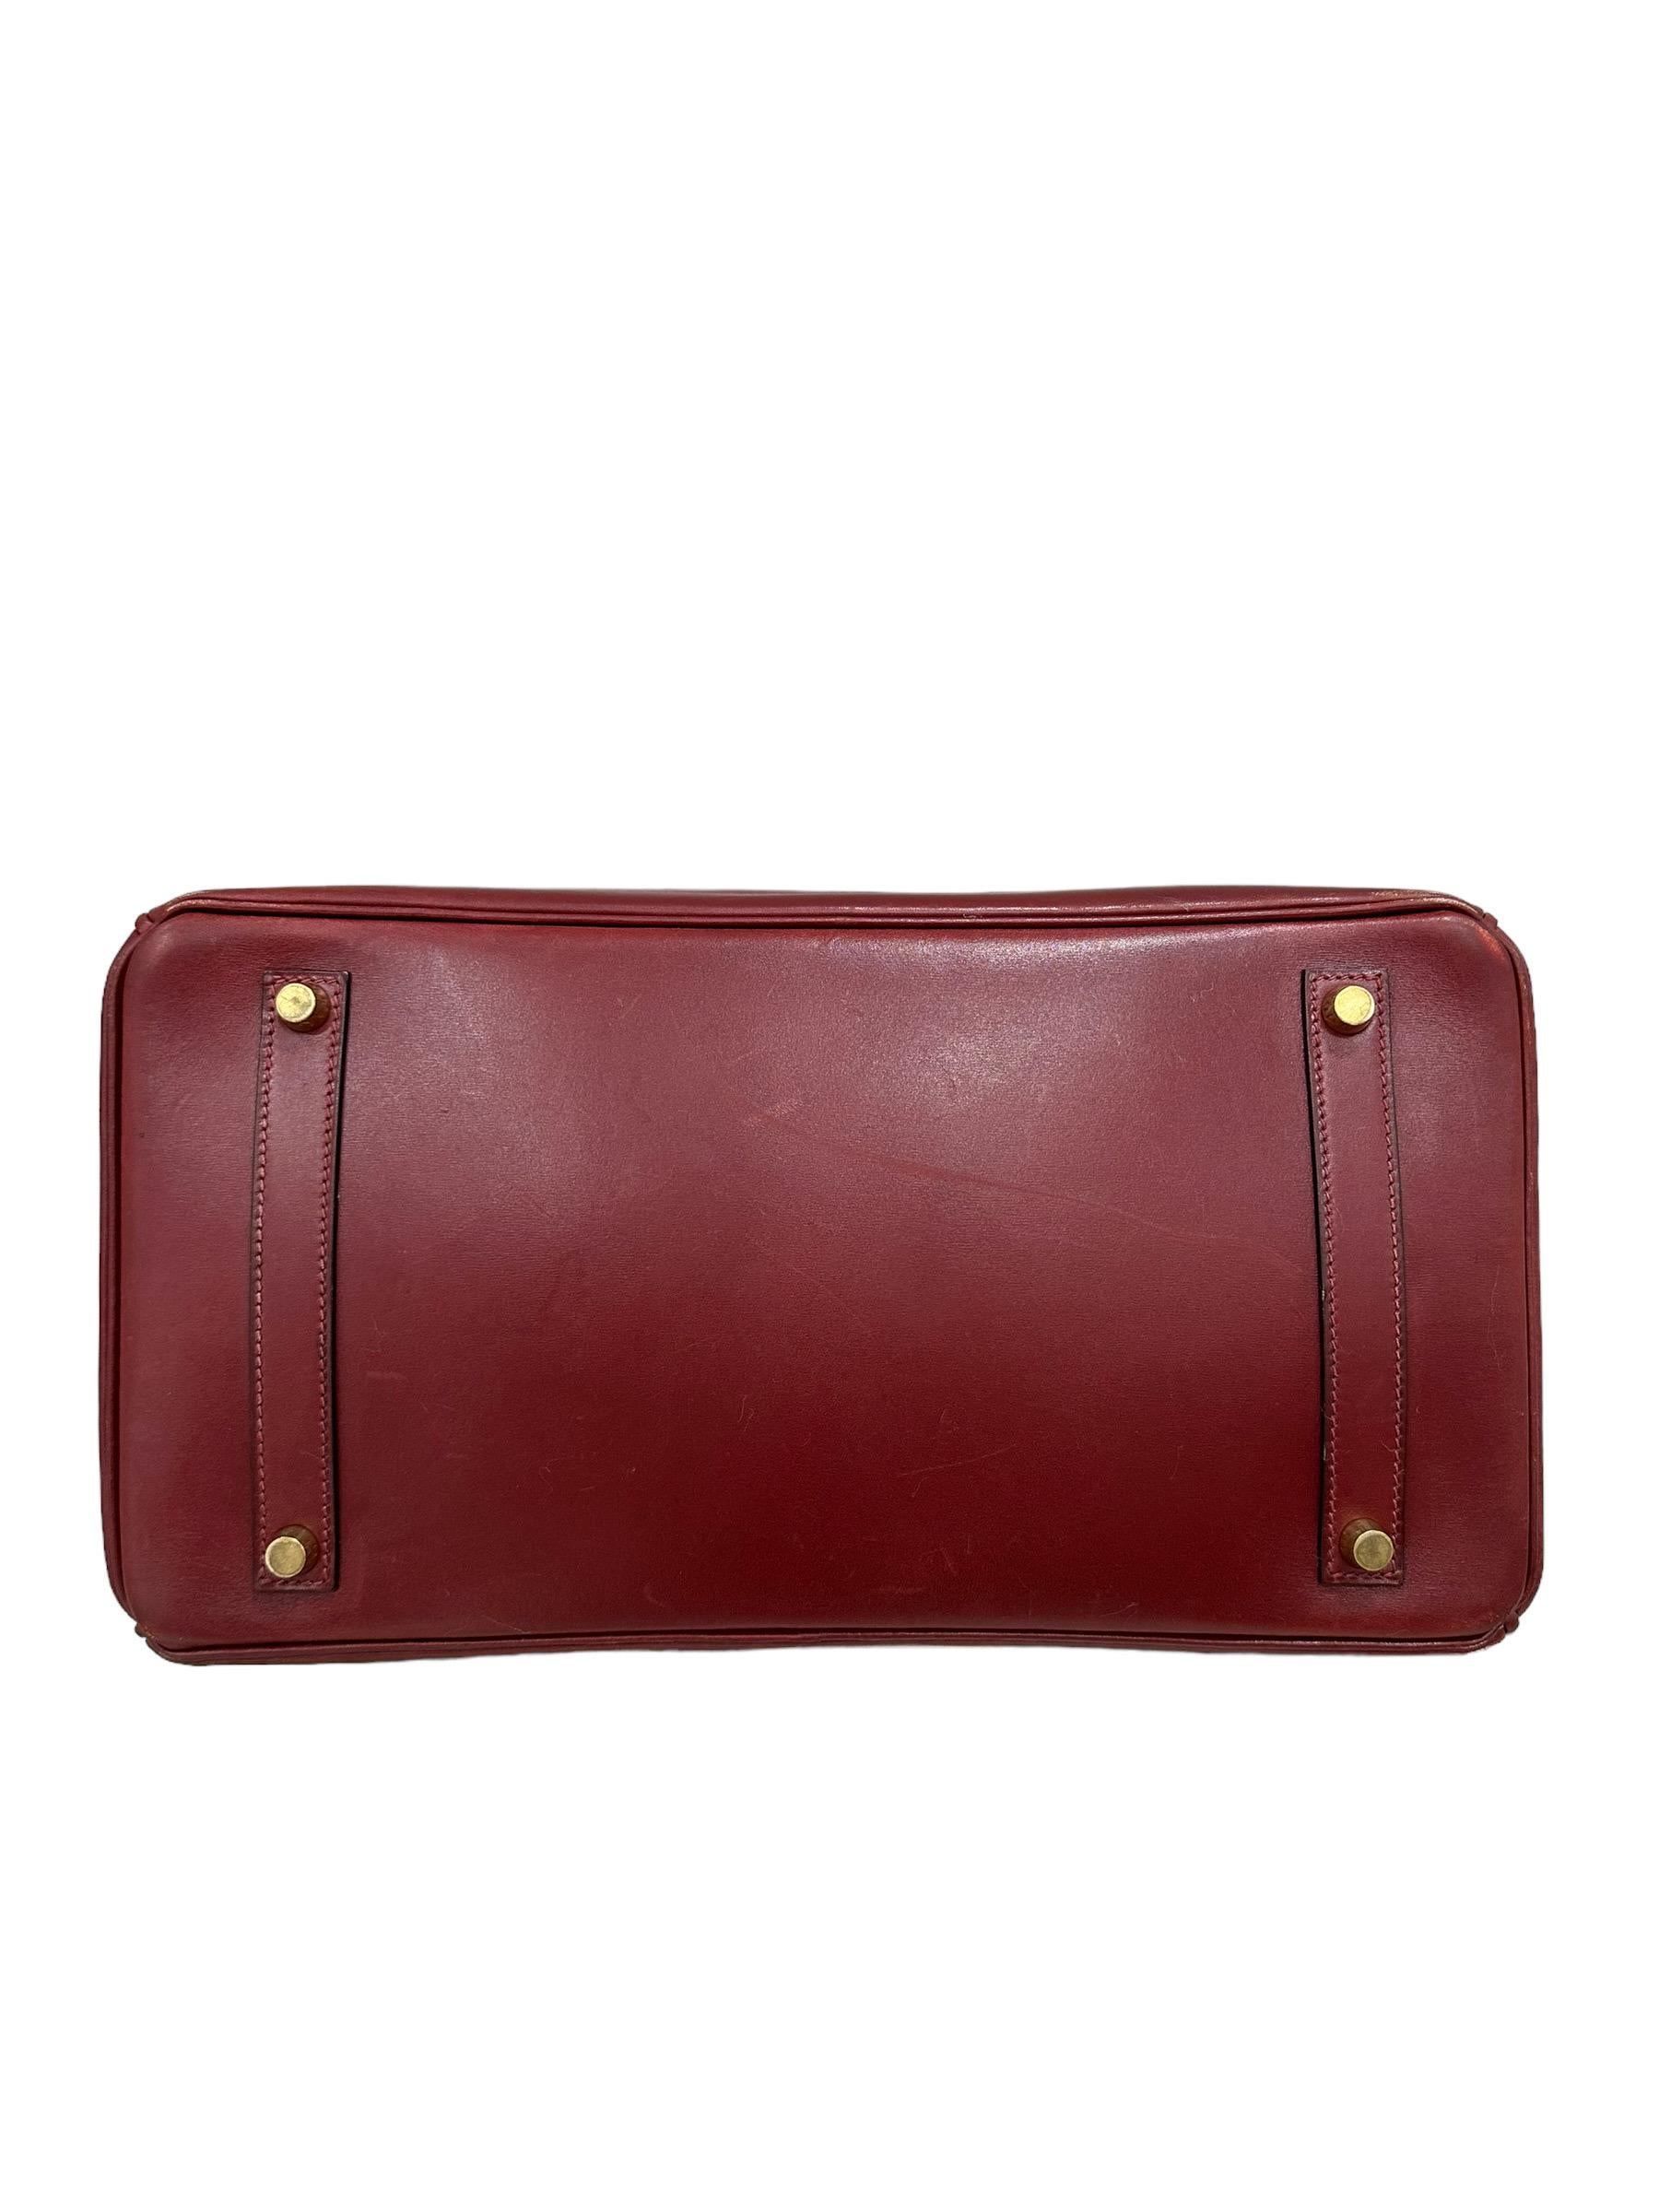 Hermès Birkin 35 Evercalf Rouge Garance Top Handle Bag 8